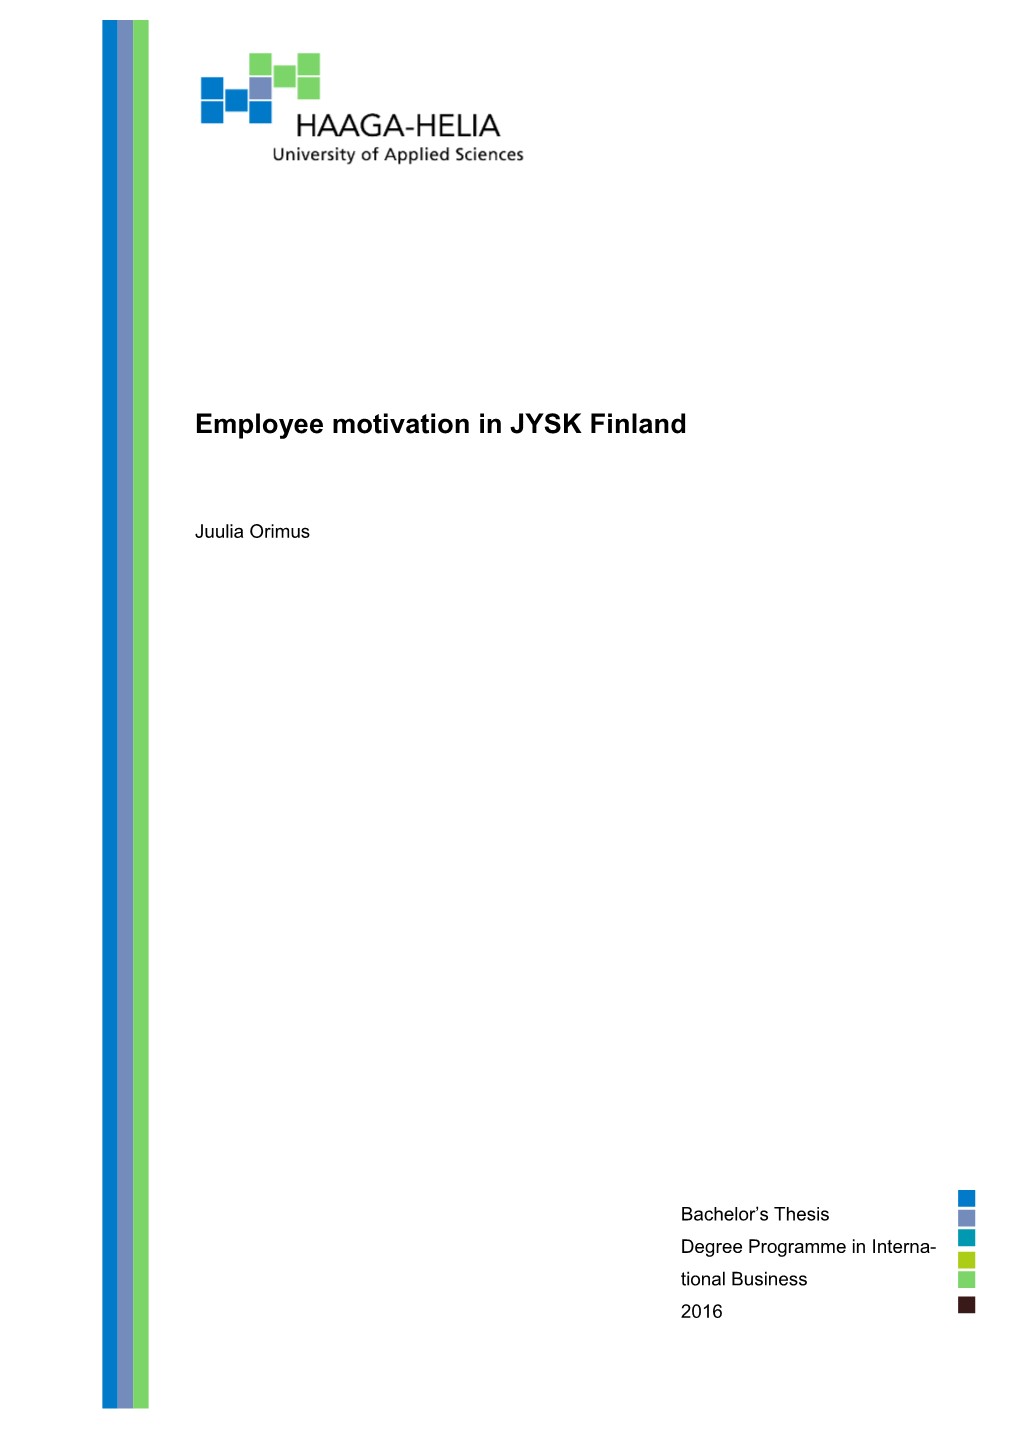 Employee Motivation in JYSK Finland